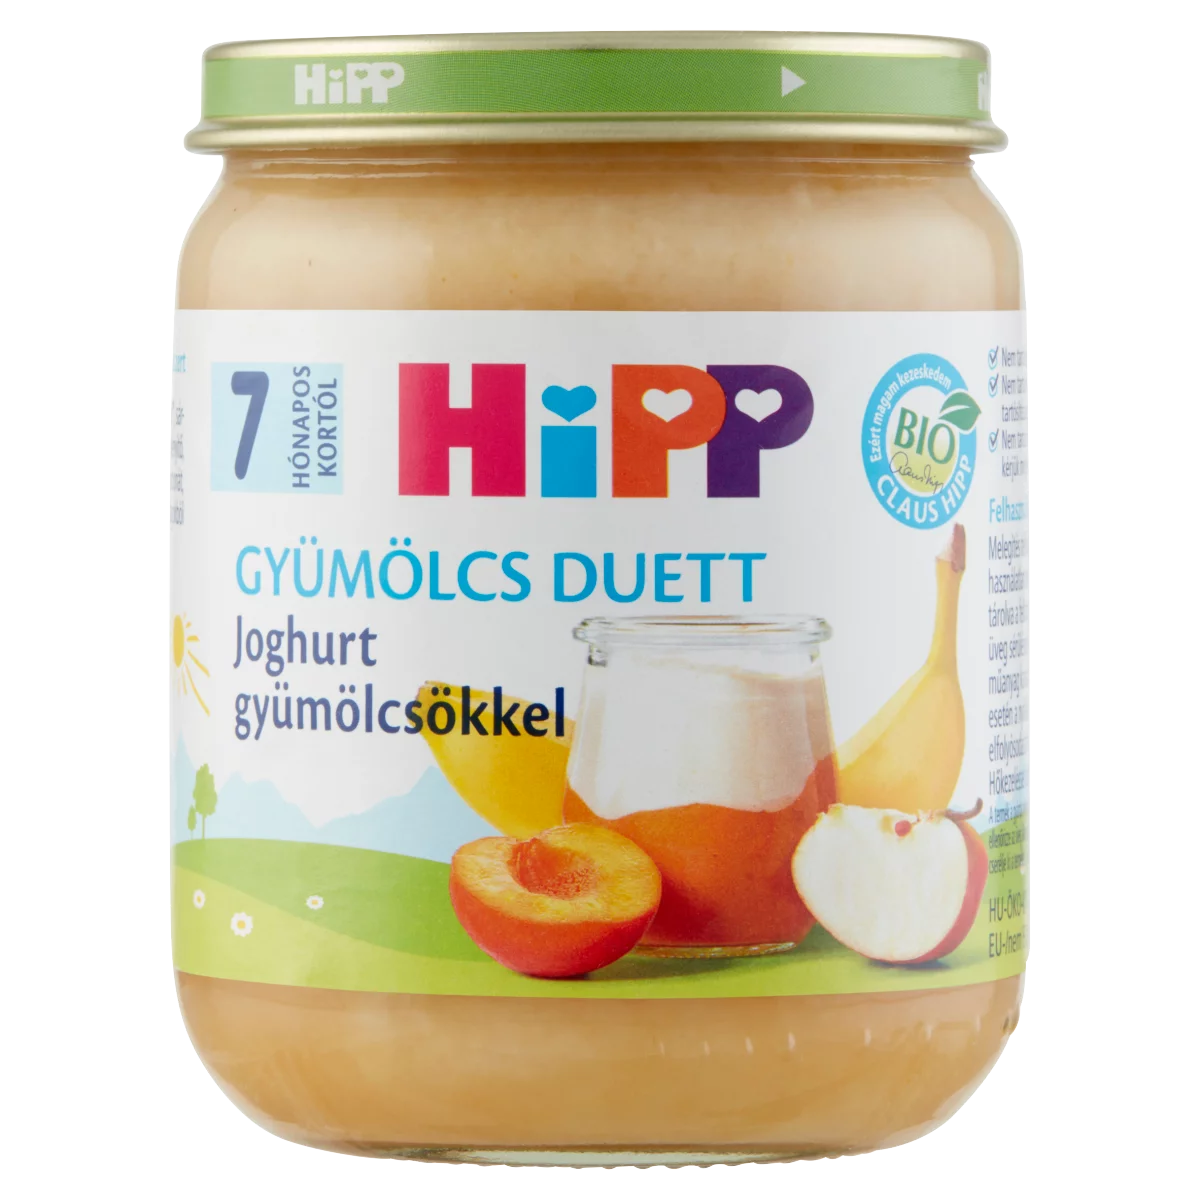 HiPP Gyümölcs Duett BIO joghurt gyümölcsökkel bébidesszert 7 hónapos kortól 160 g